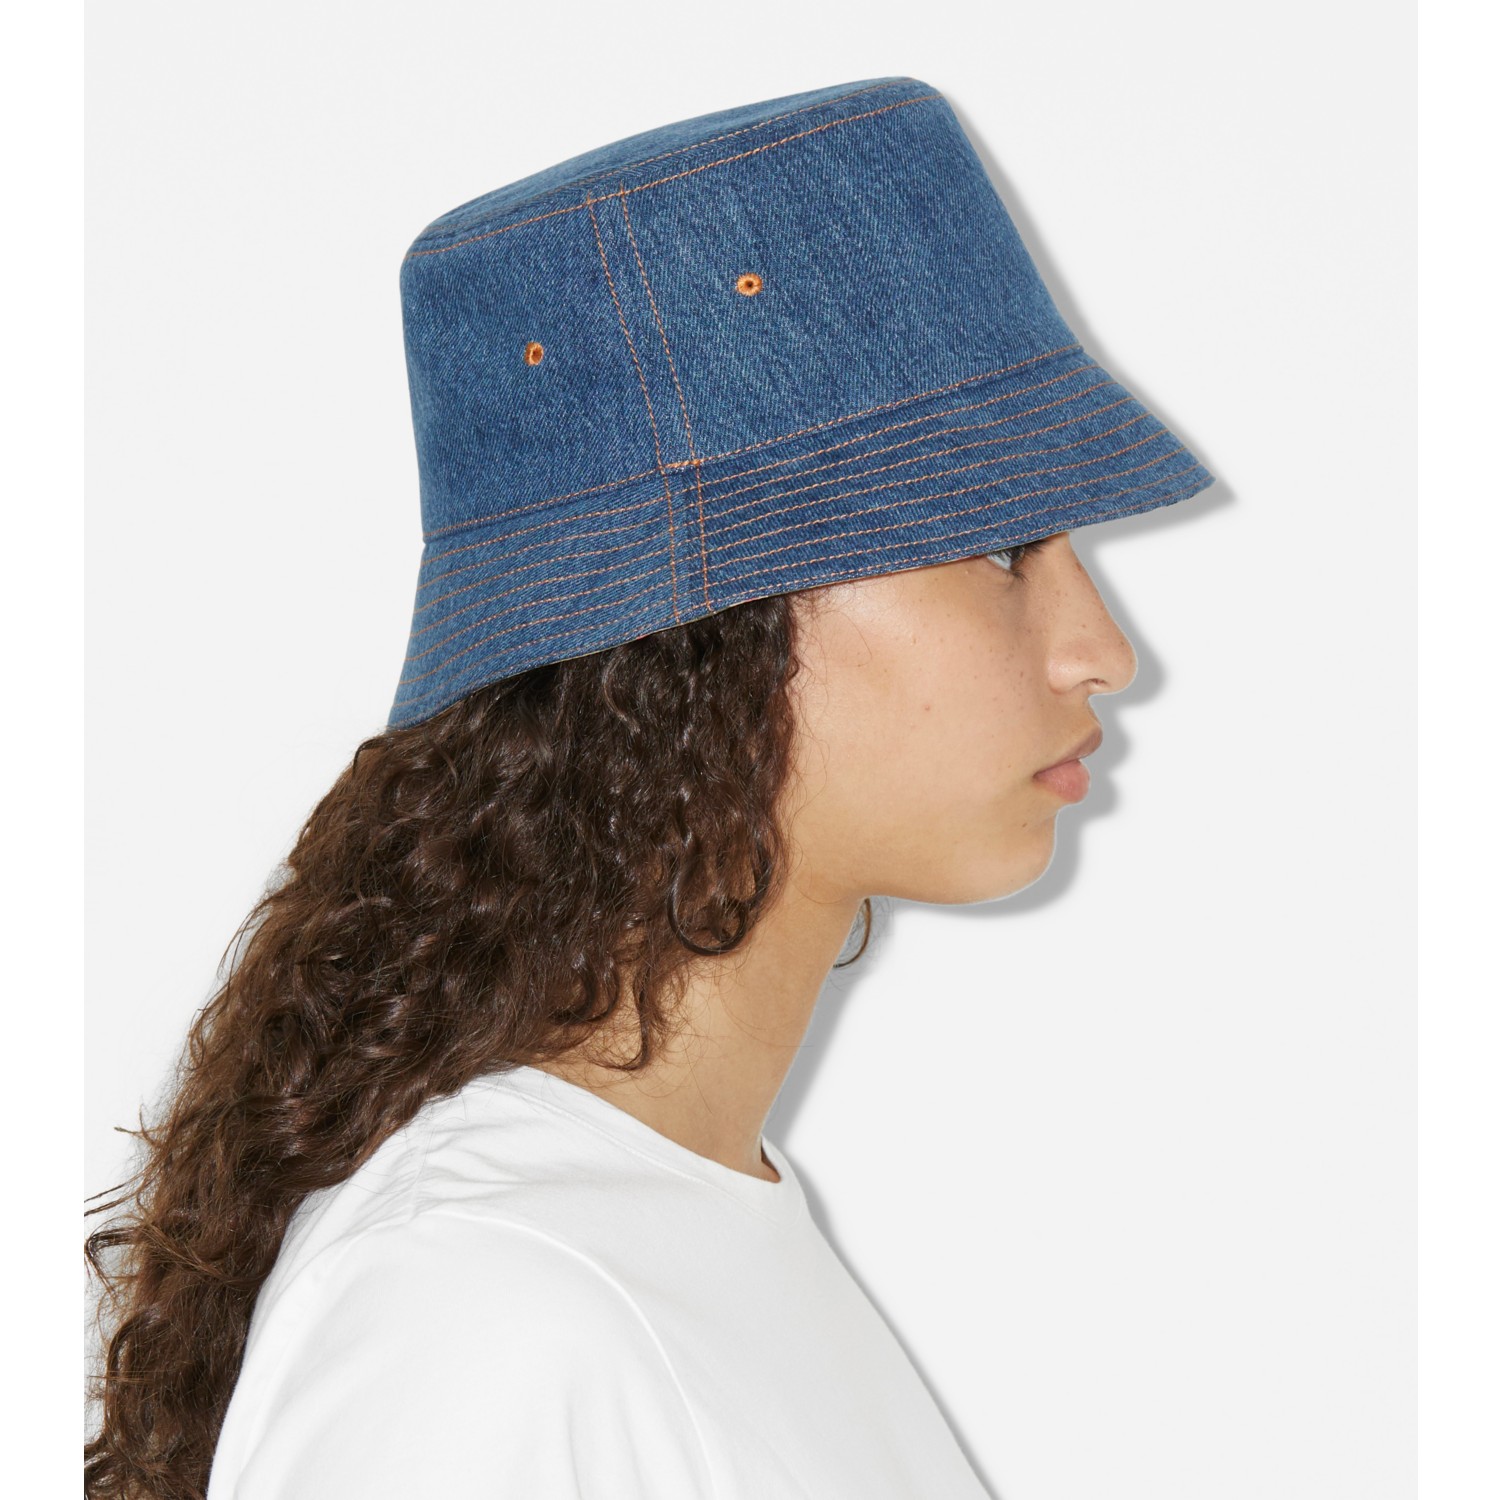 Burberry Monogram Print Denim Bucket Hat In Denim Blue Ip Pttn